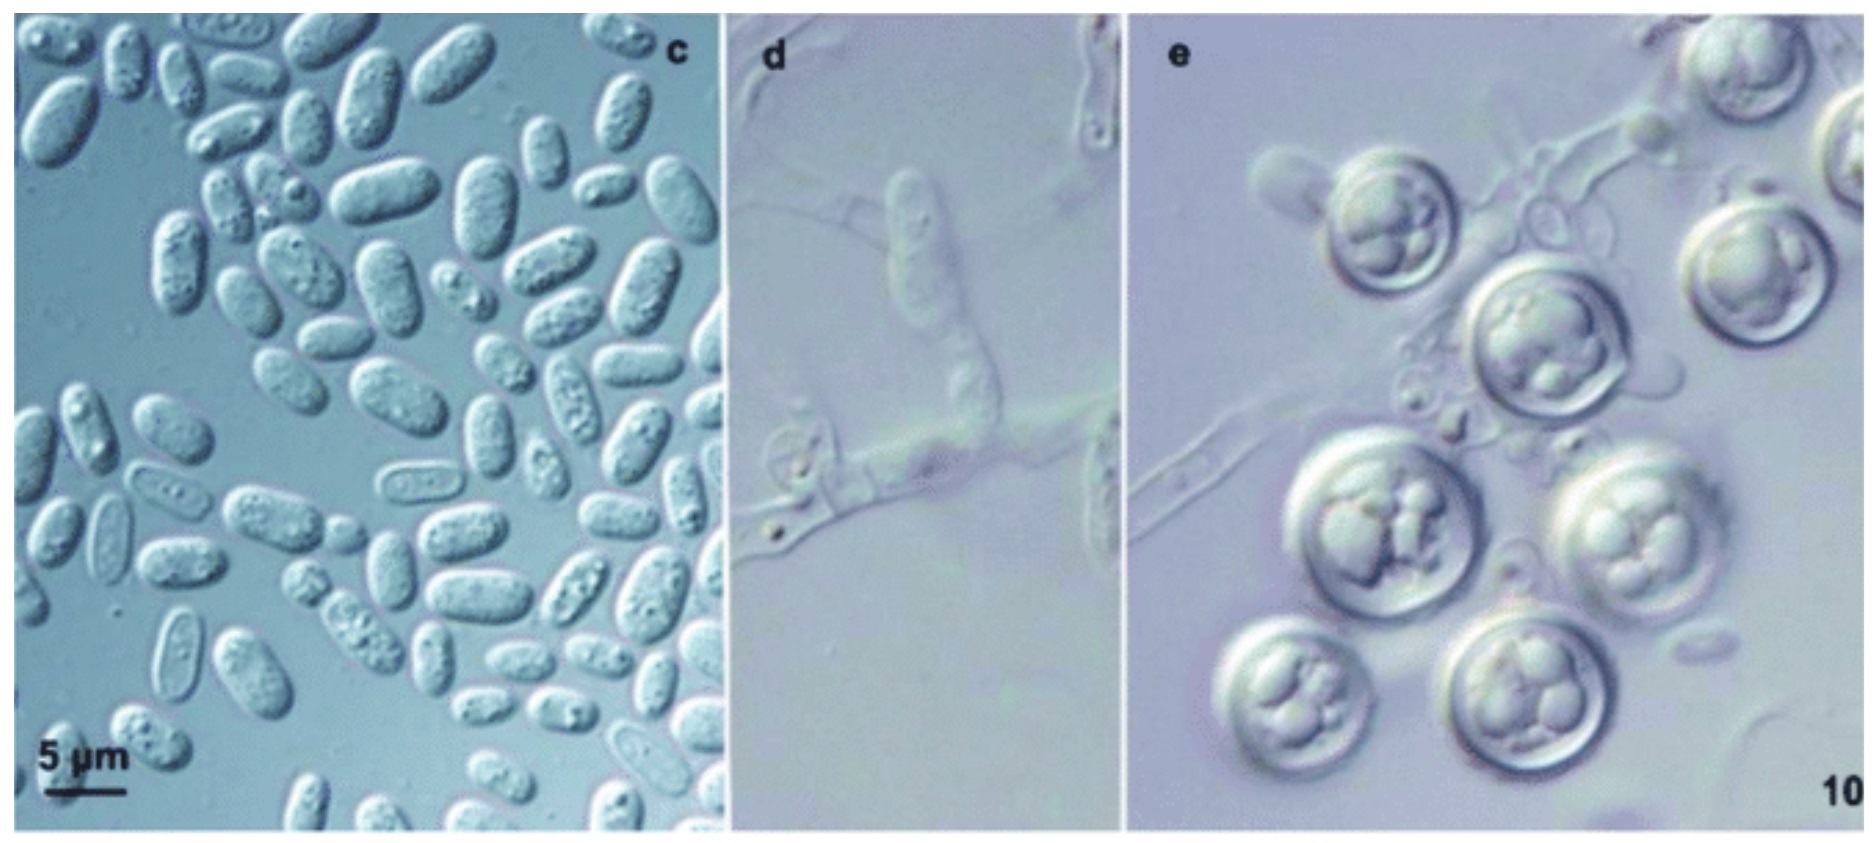 Los hongos patógenos están adaptándose a temperaturas más altas